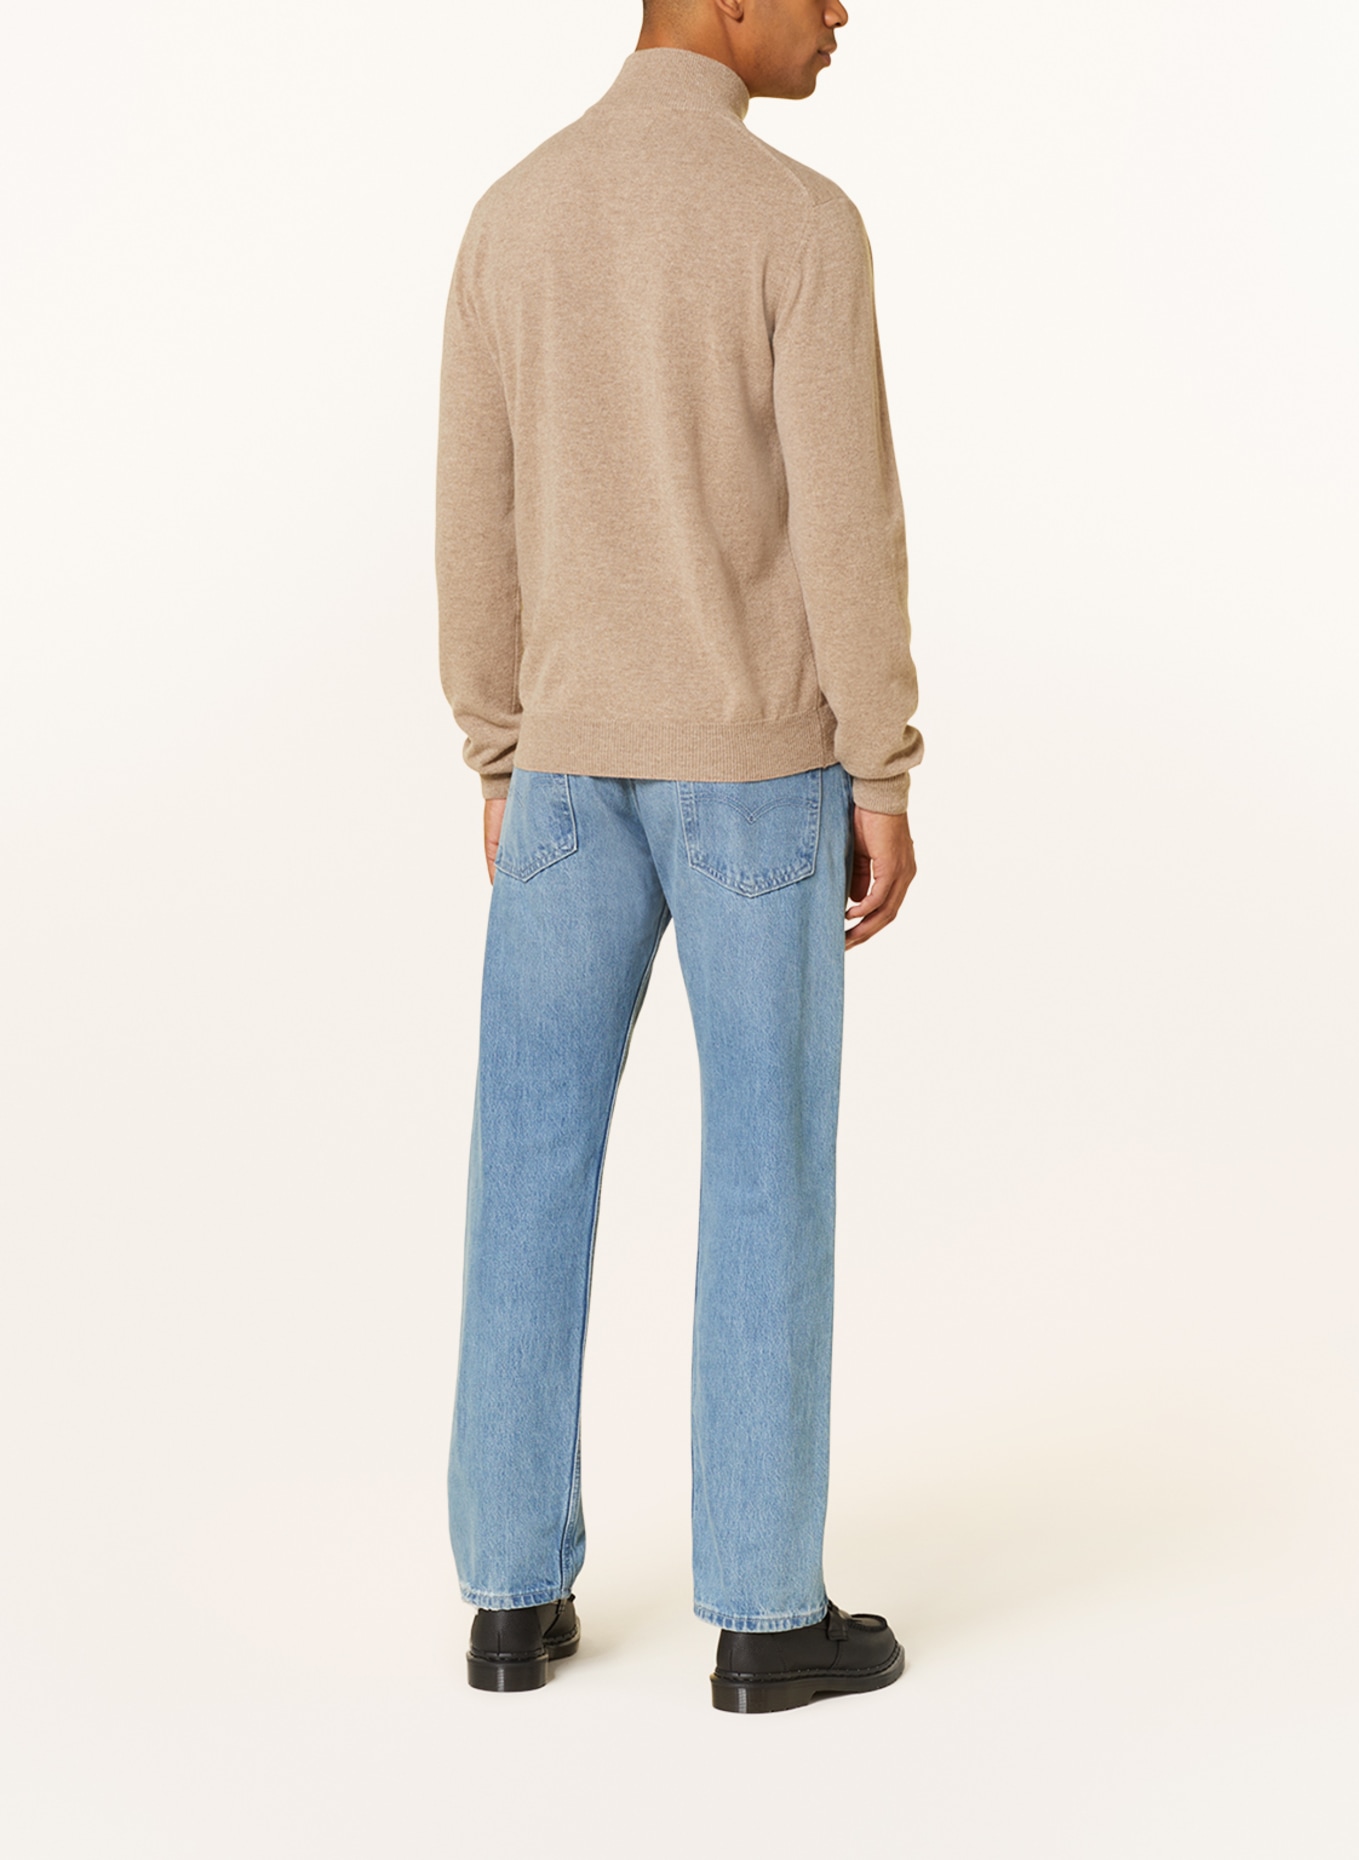 GANT Half-zip sweater, Color: BEIGE (Image 3)